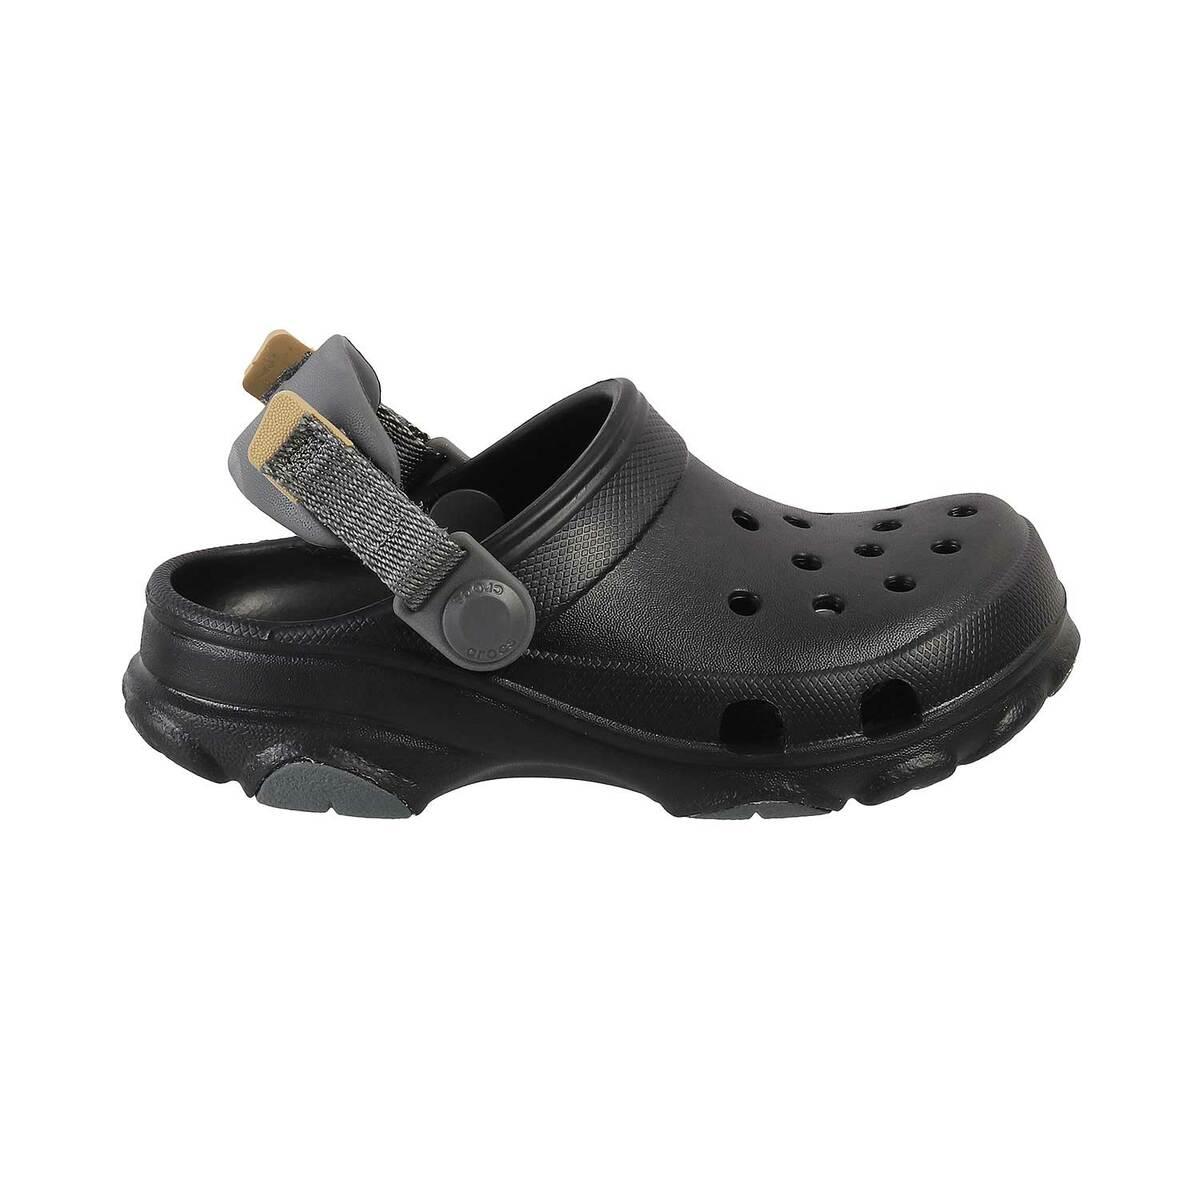 Men Literide Crocs | Water shoes for men, Crocs literide, Crocs shoes